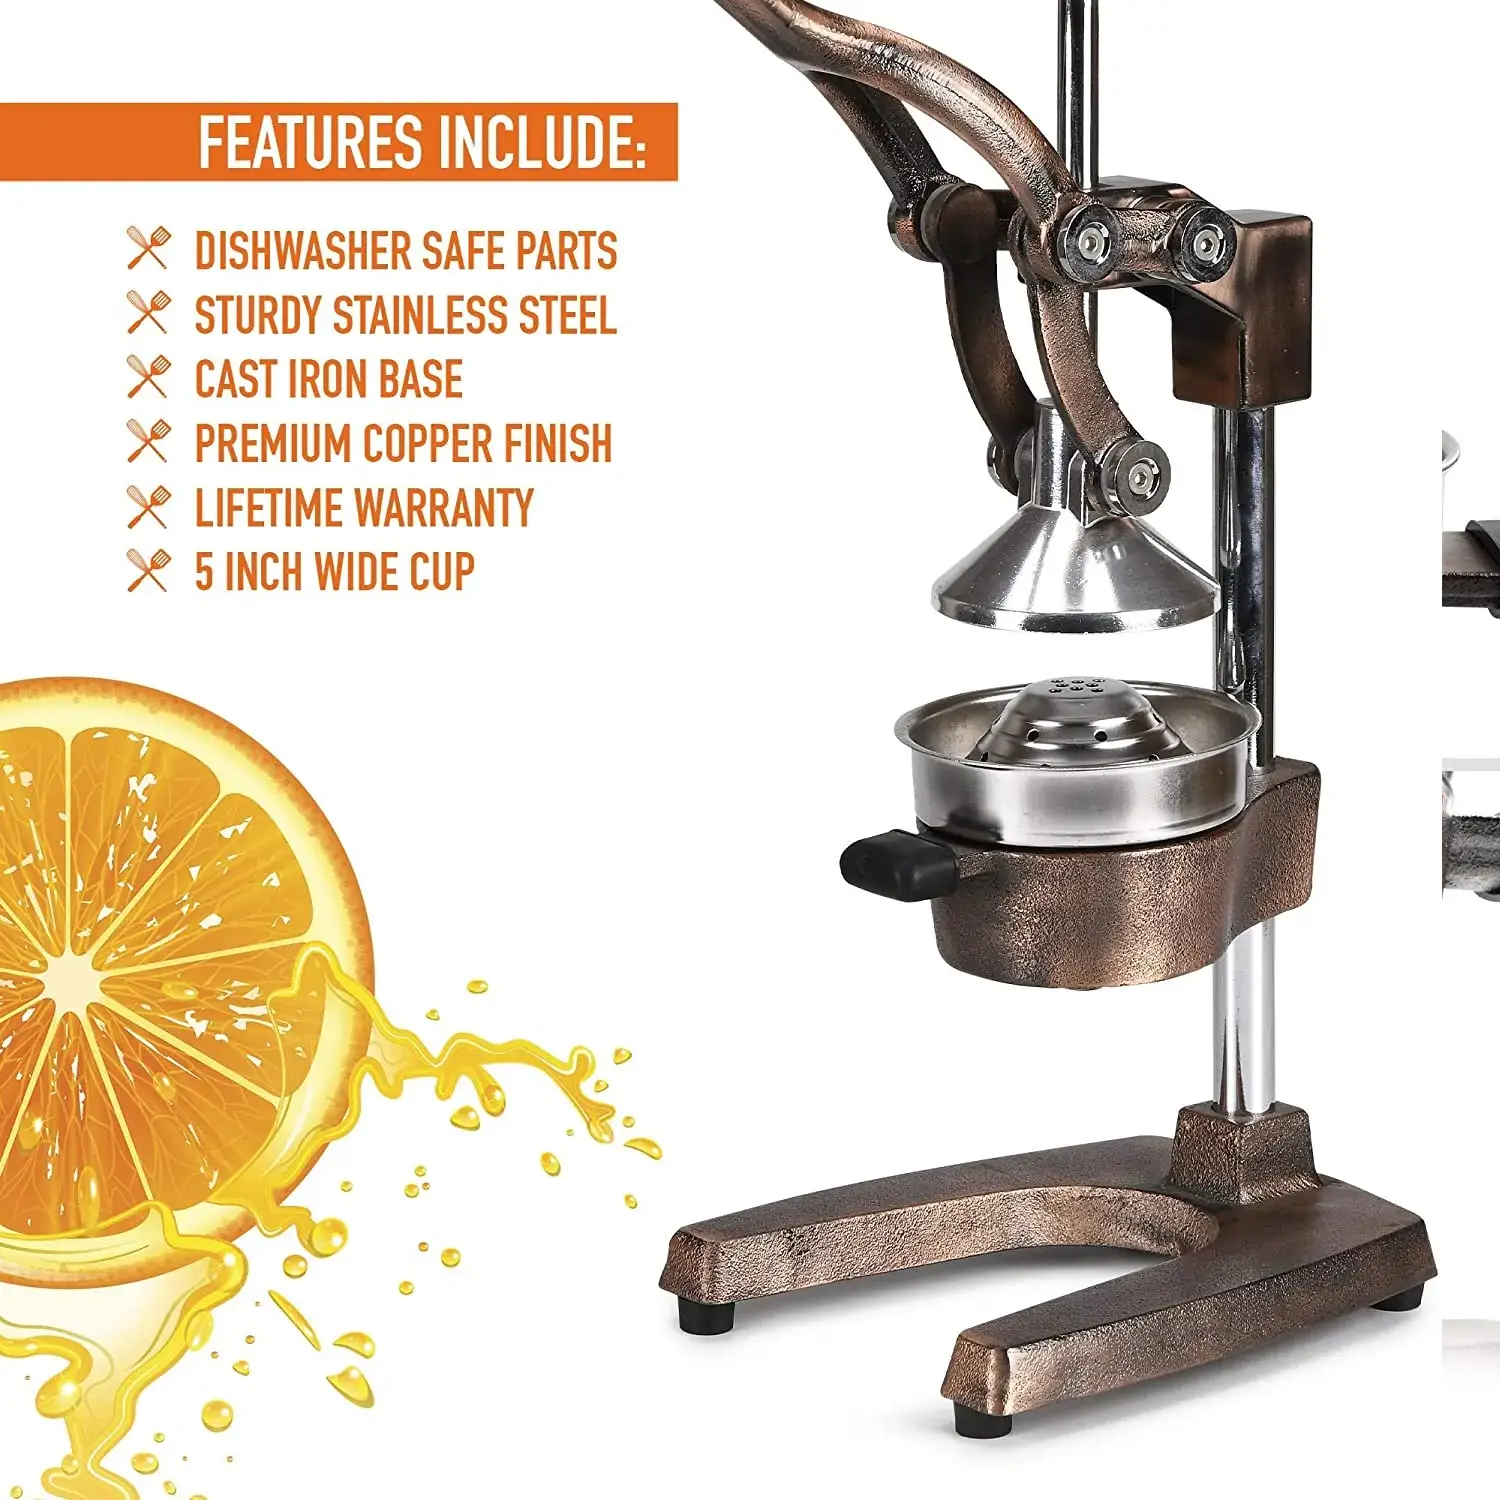 Premium Citrus Juicer - Manual Citrus Press And Orange Squeezer